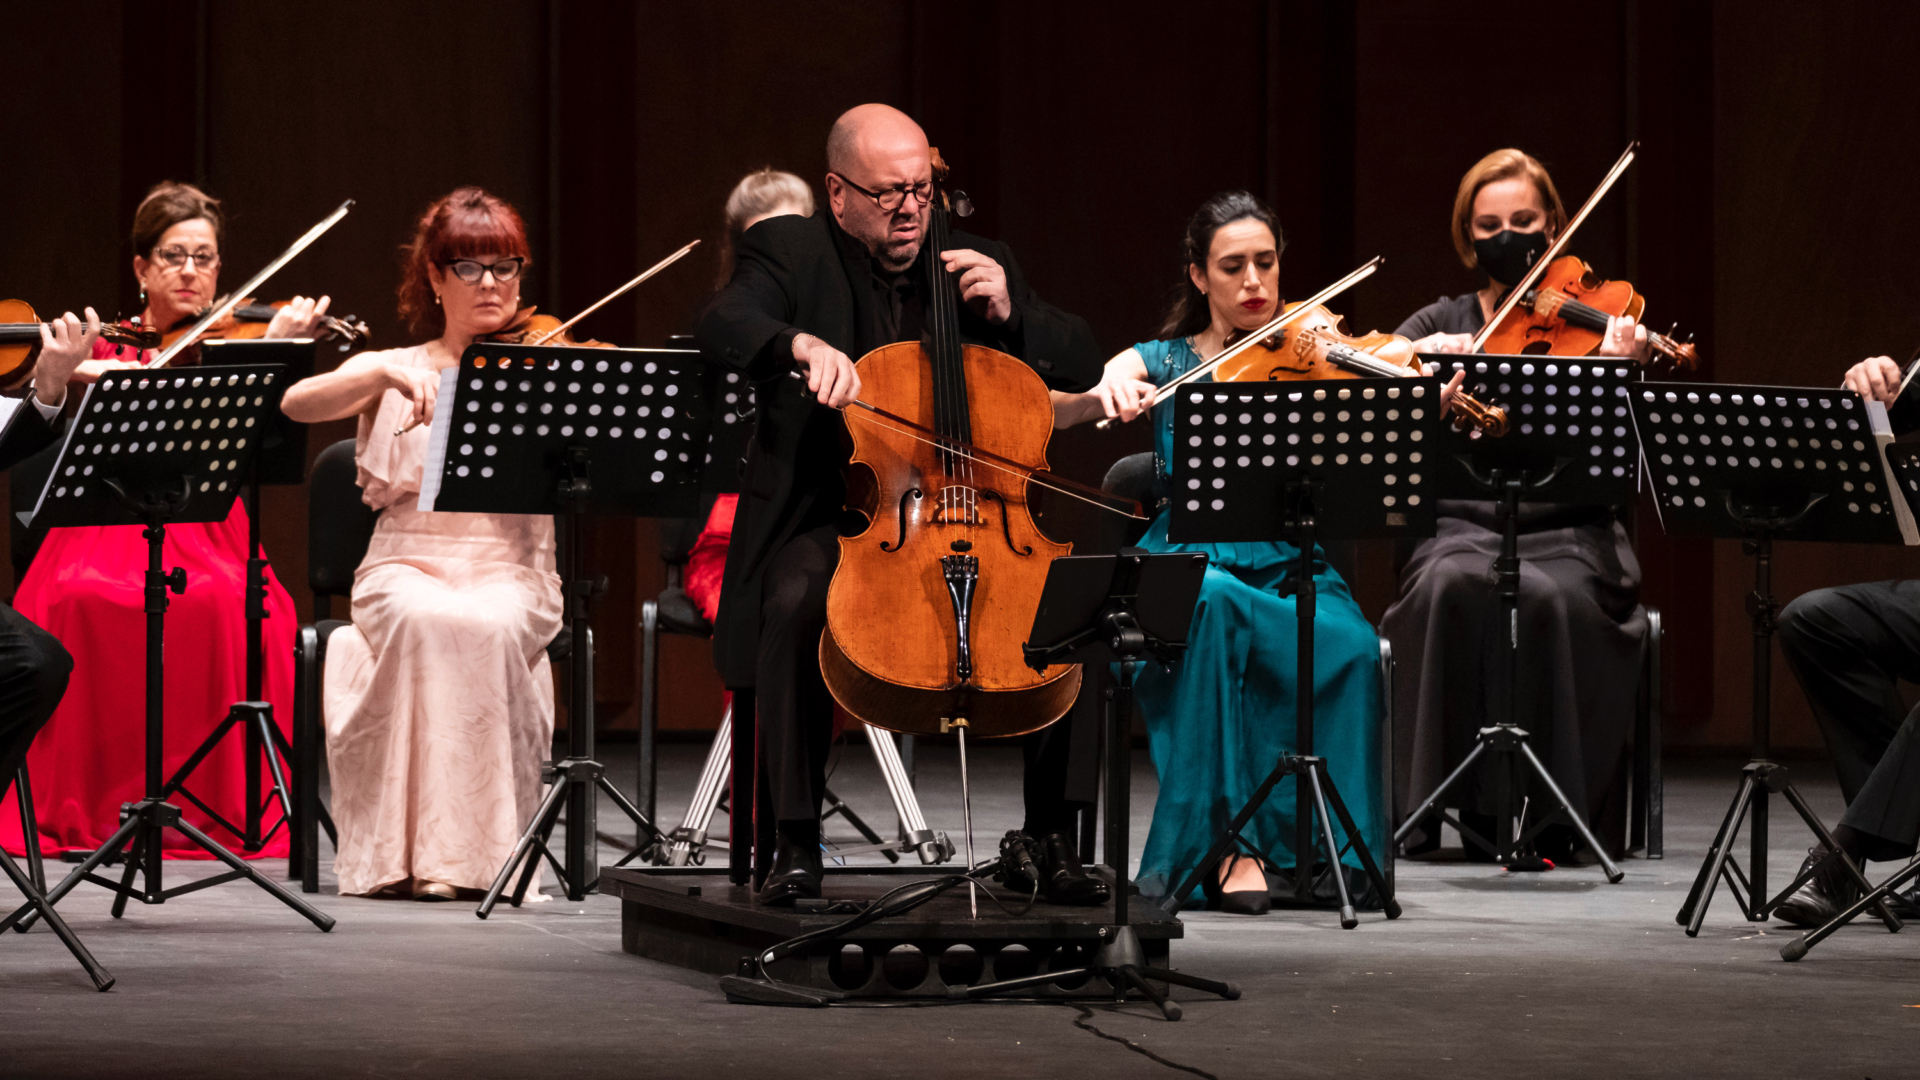 3 maggio: I Solisti di Pavia in concerto al Fraschini [SOLD OUT]